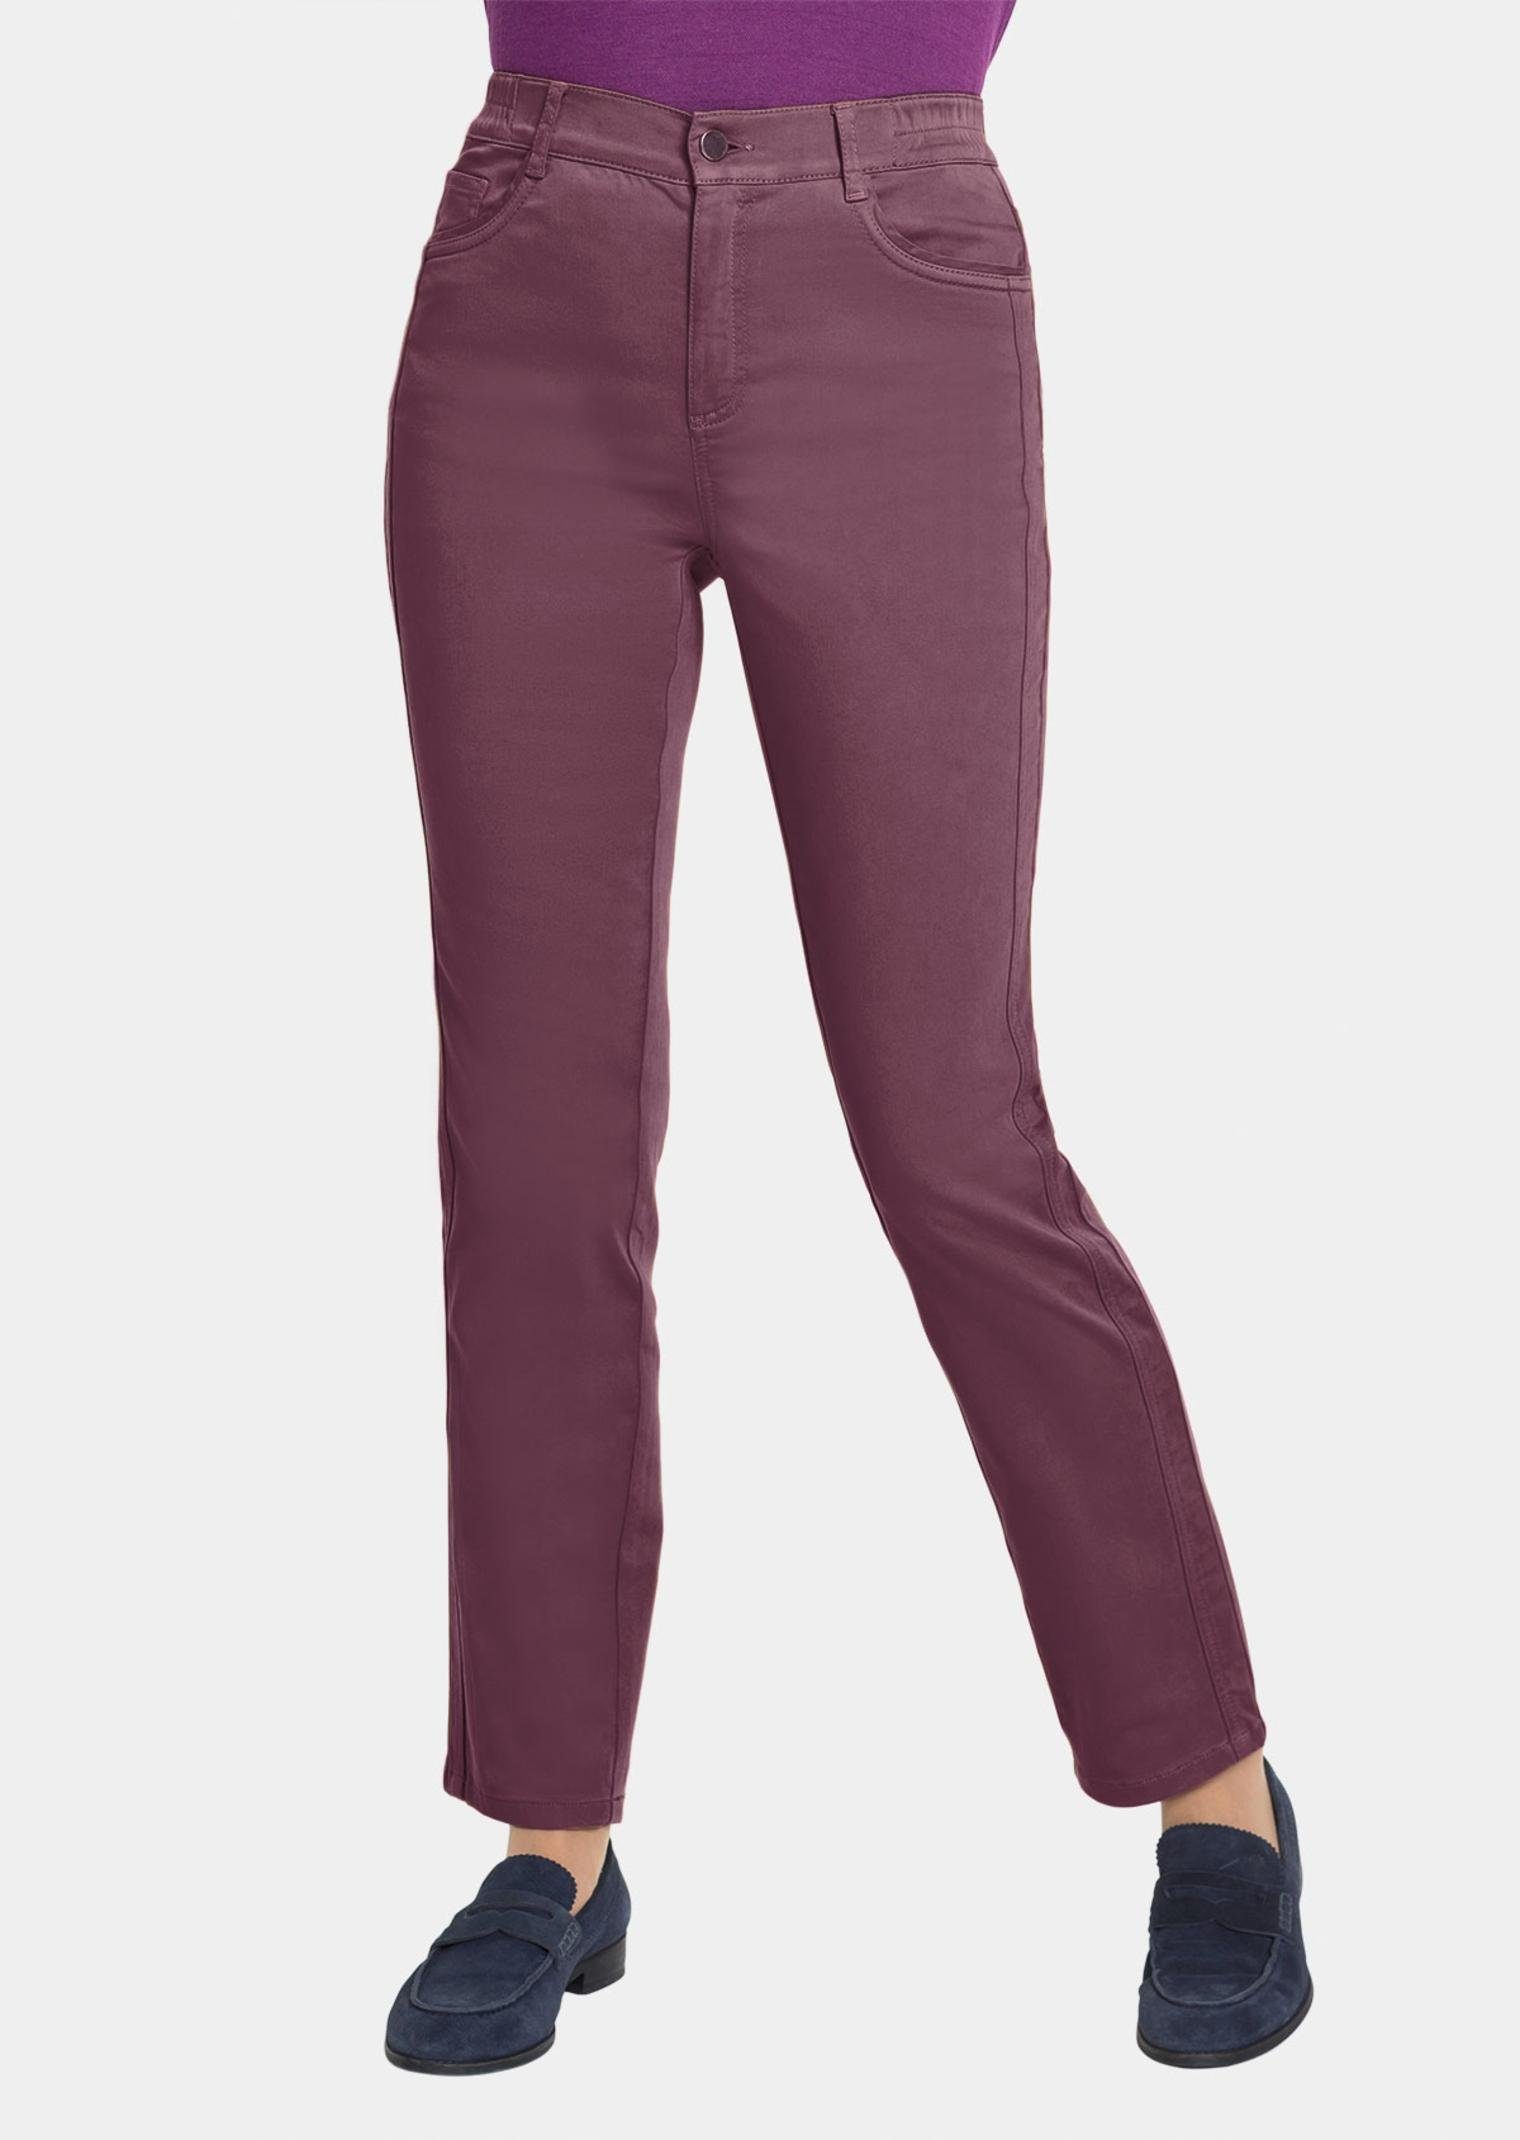 traubenviolett Hose Carla und in Farbe Form jeanstypischer Stoffhose GOLDNER trendstarker